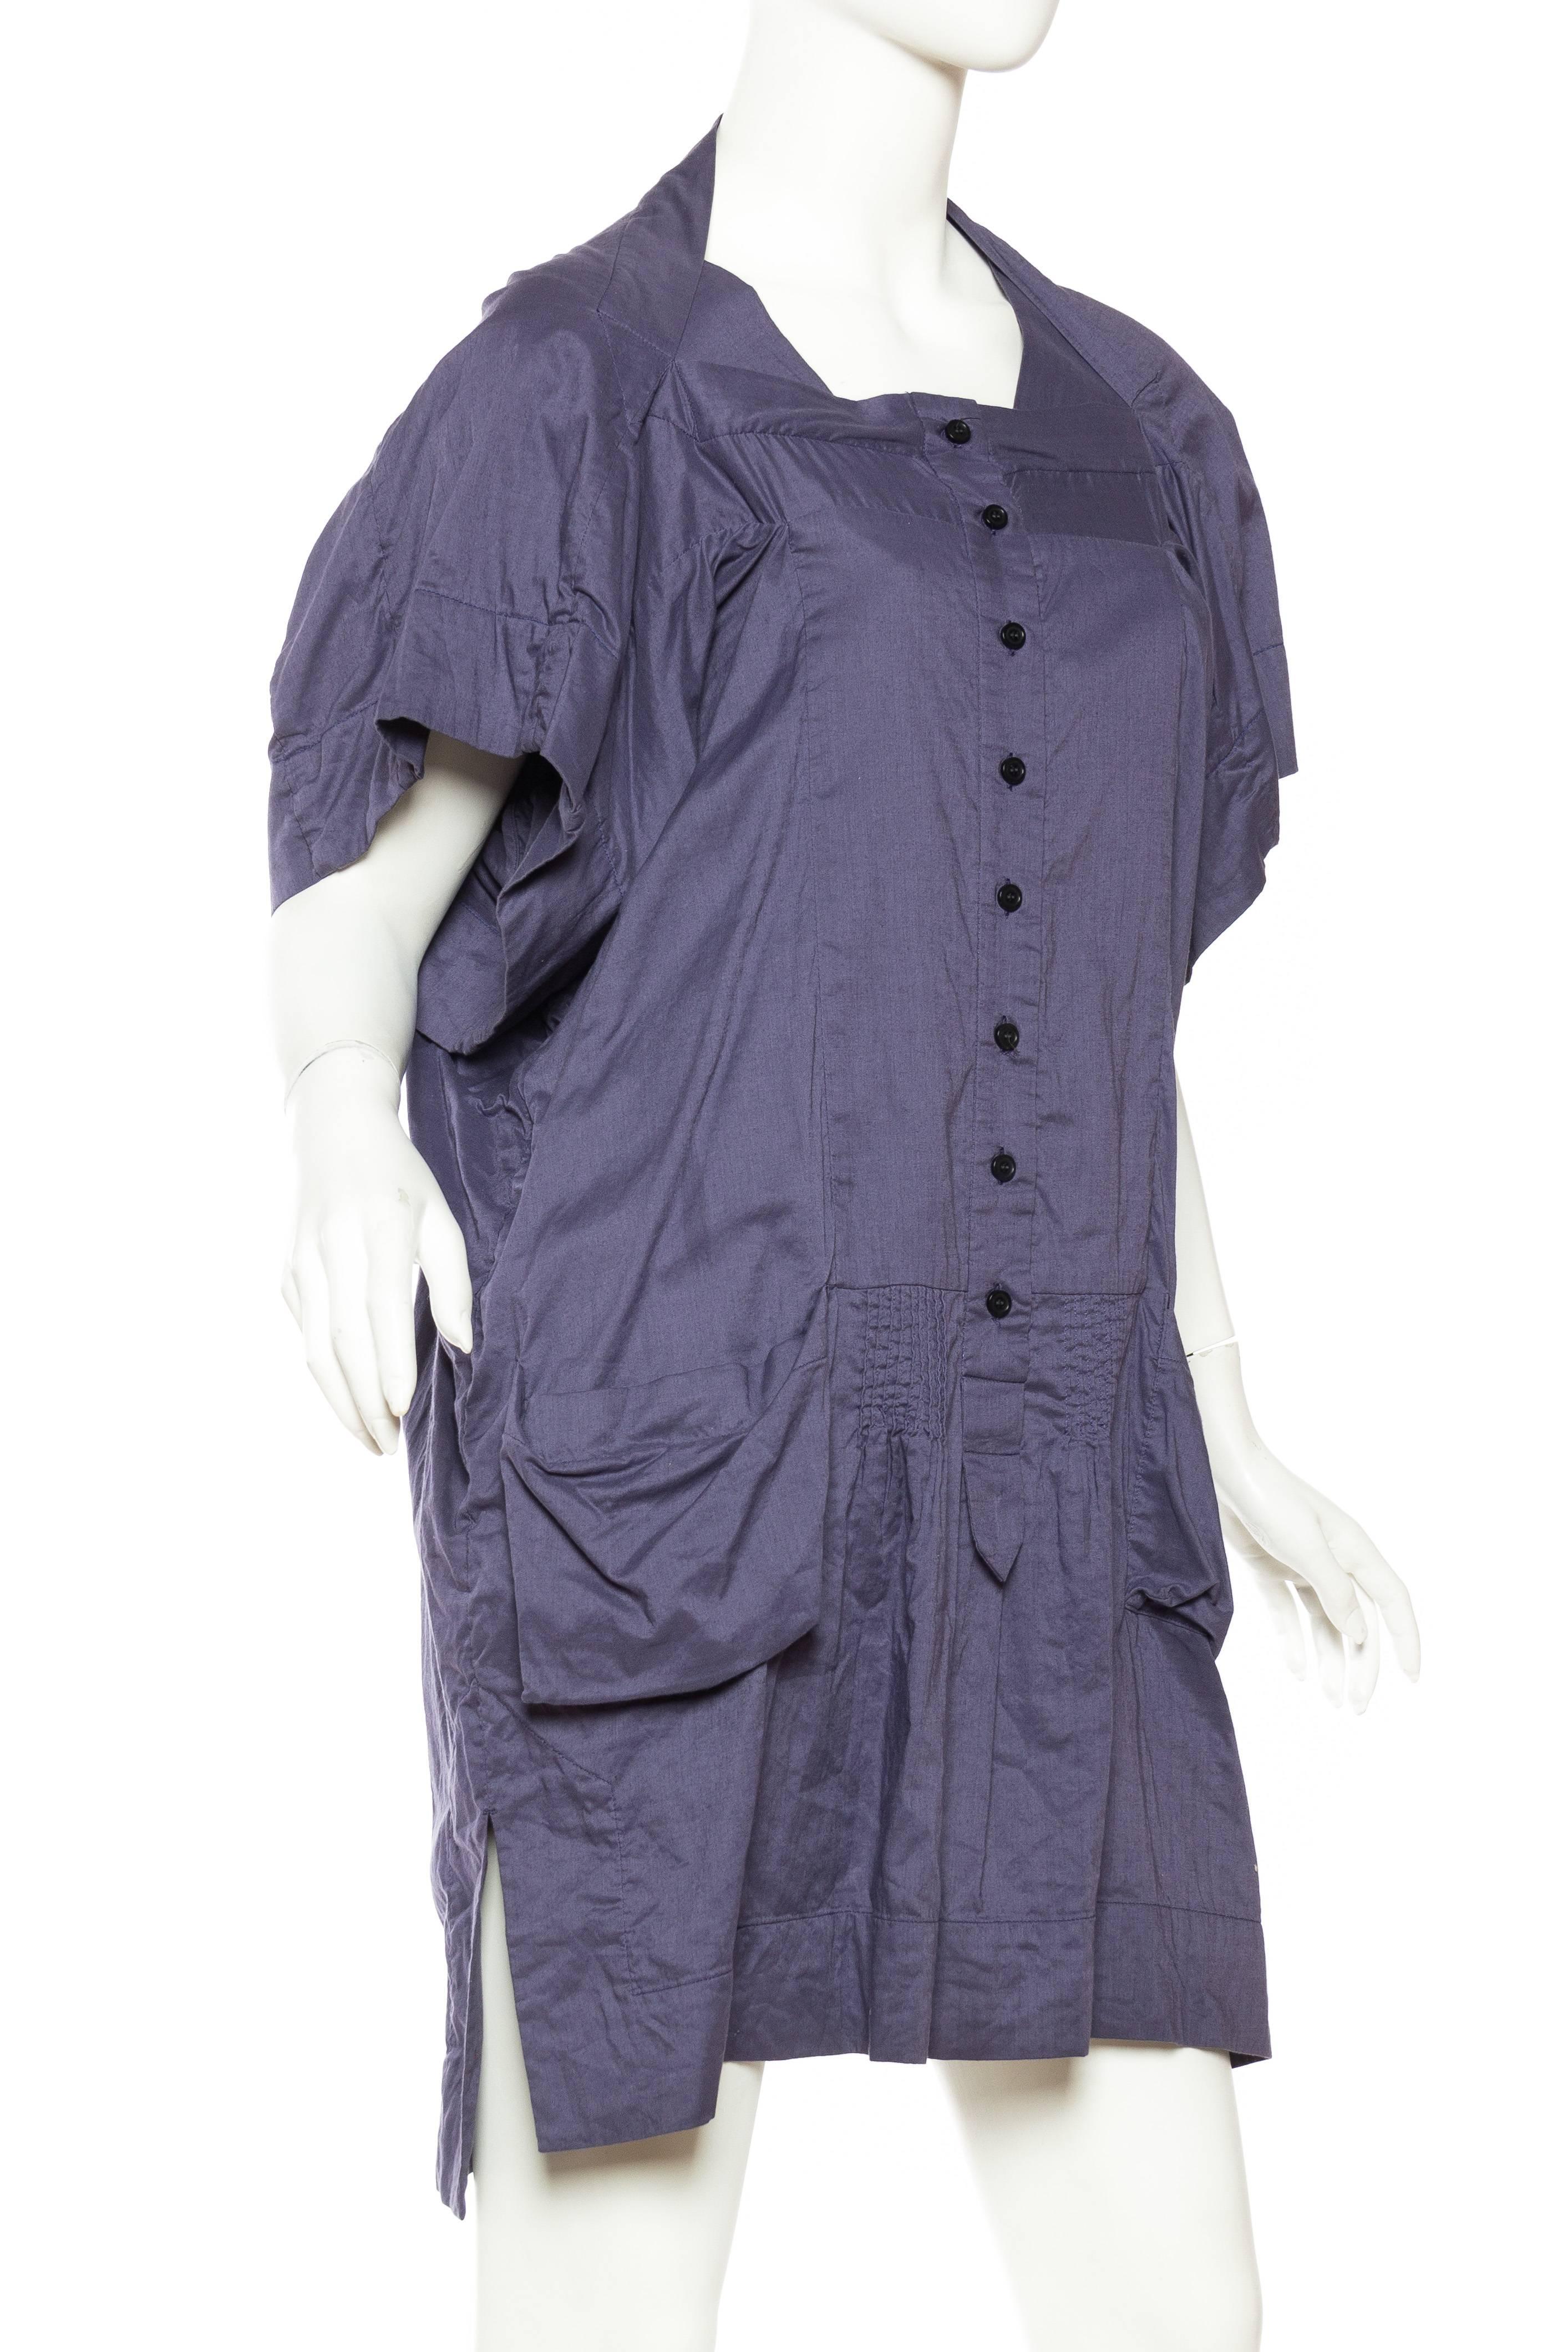 Women's Bernhard Willhelm Cotton Dress